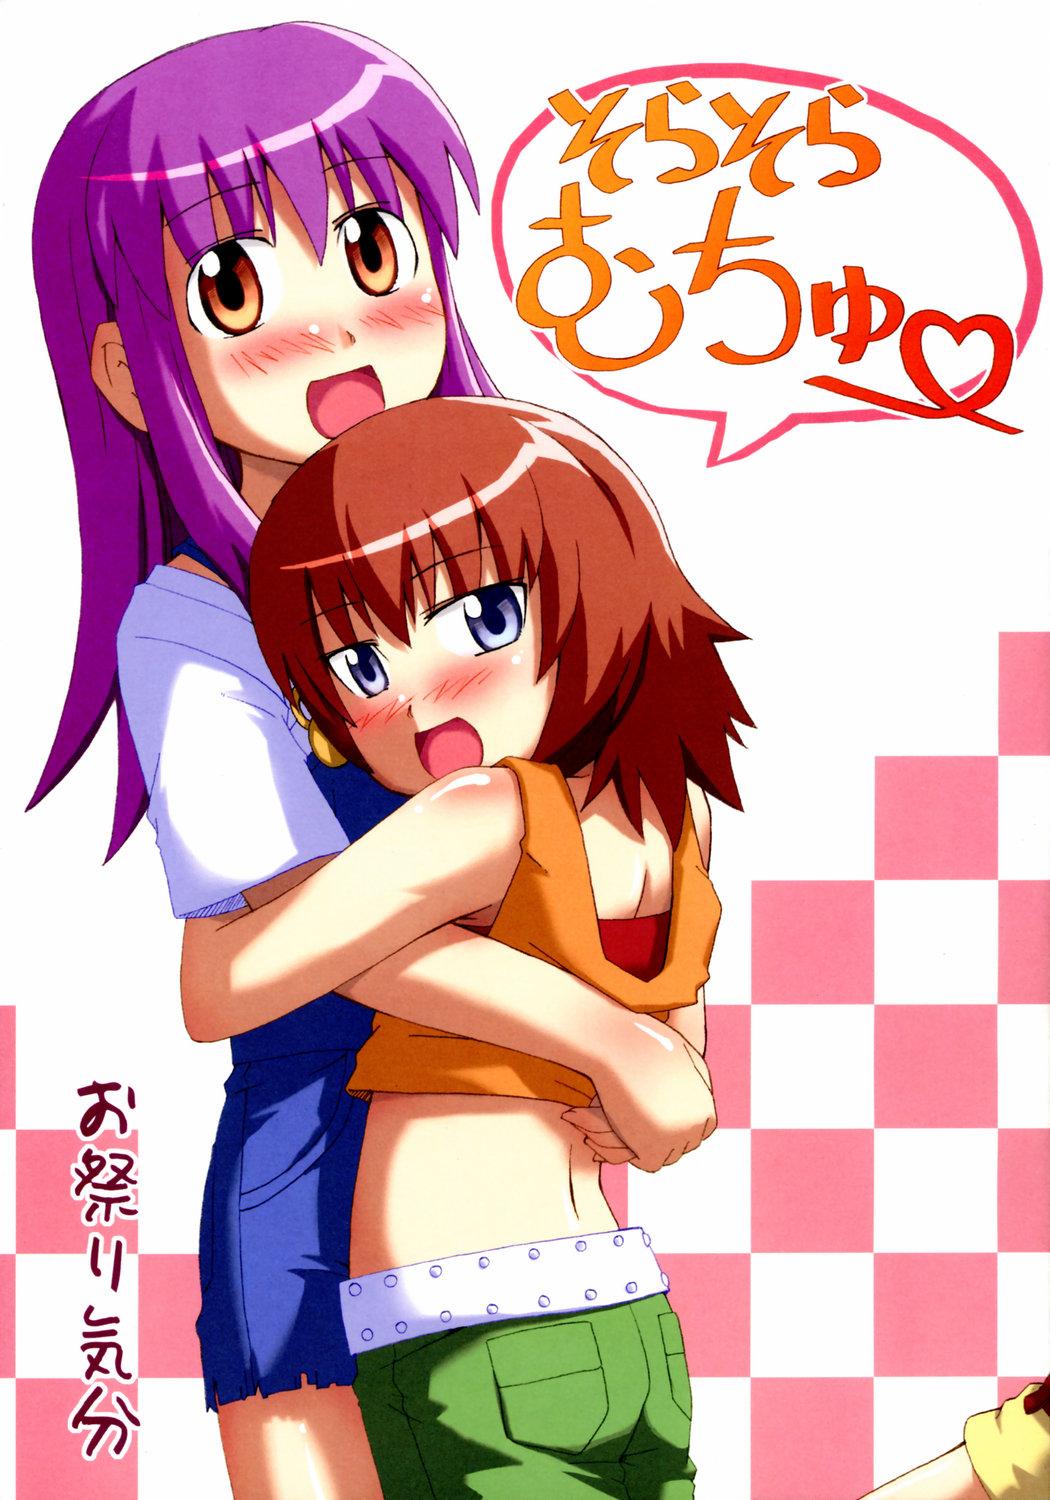 Sucking Cock Sora Sora Muchu - Kaleido star Gays - Picture 1